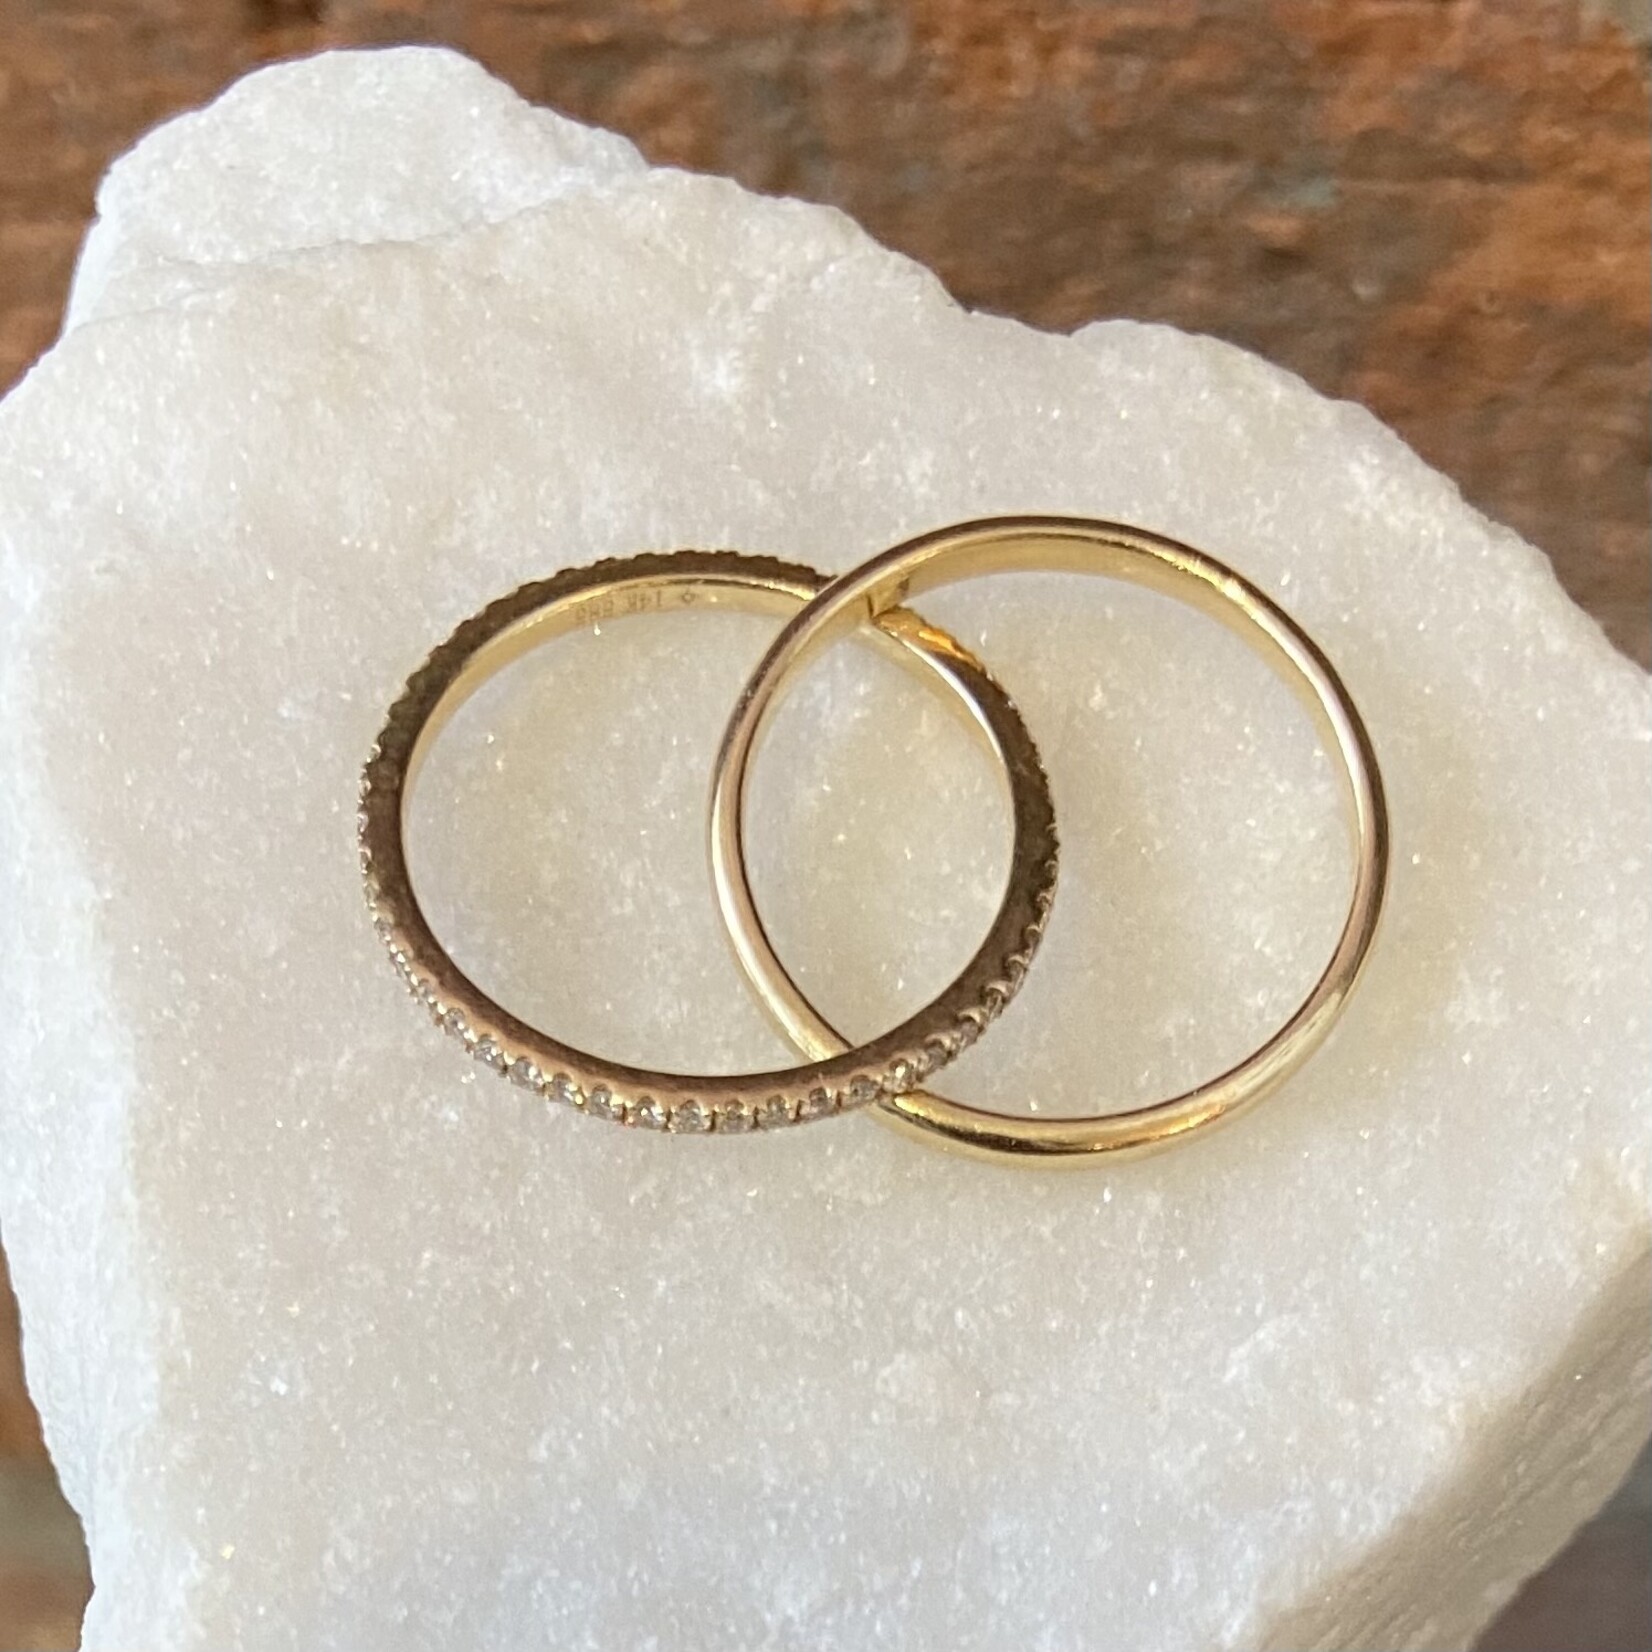 Andi Alyse Yellow Gold and Diamond Interlocking Ring